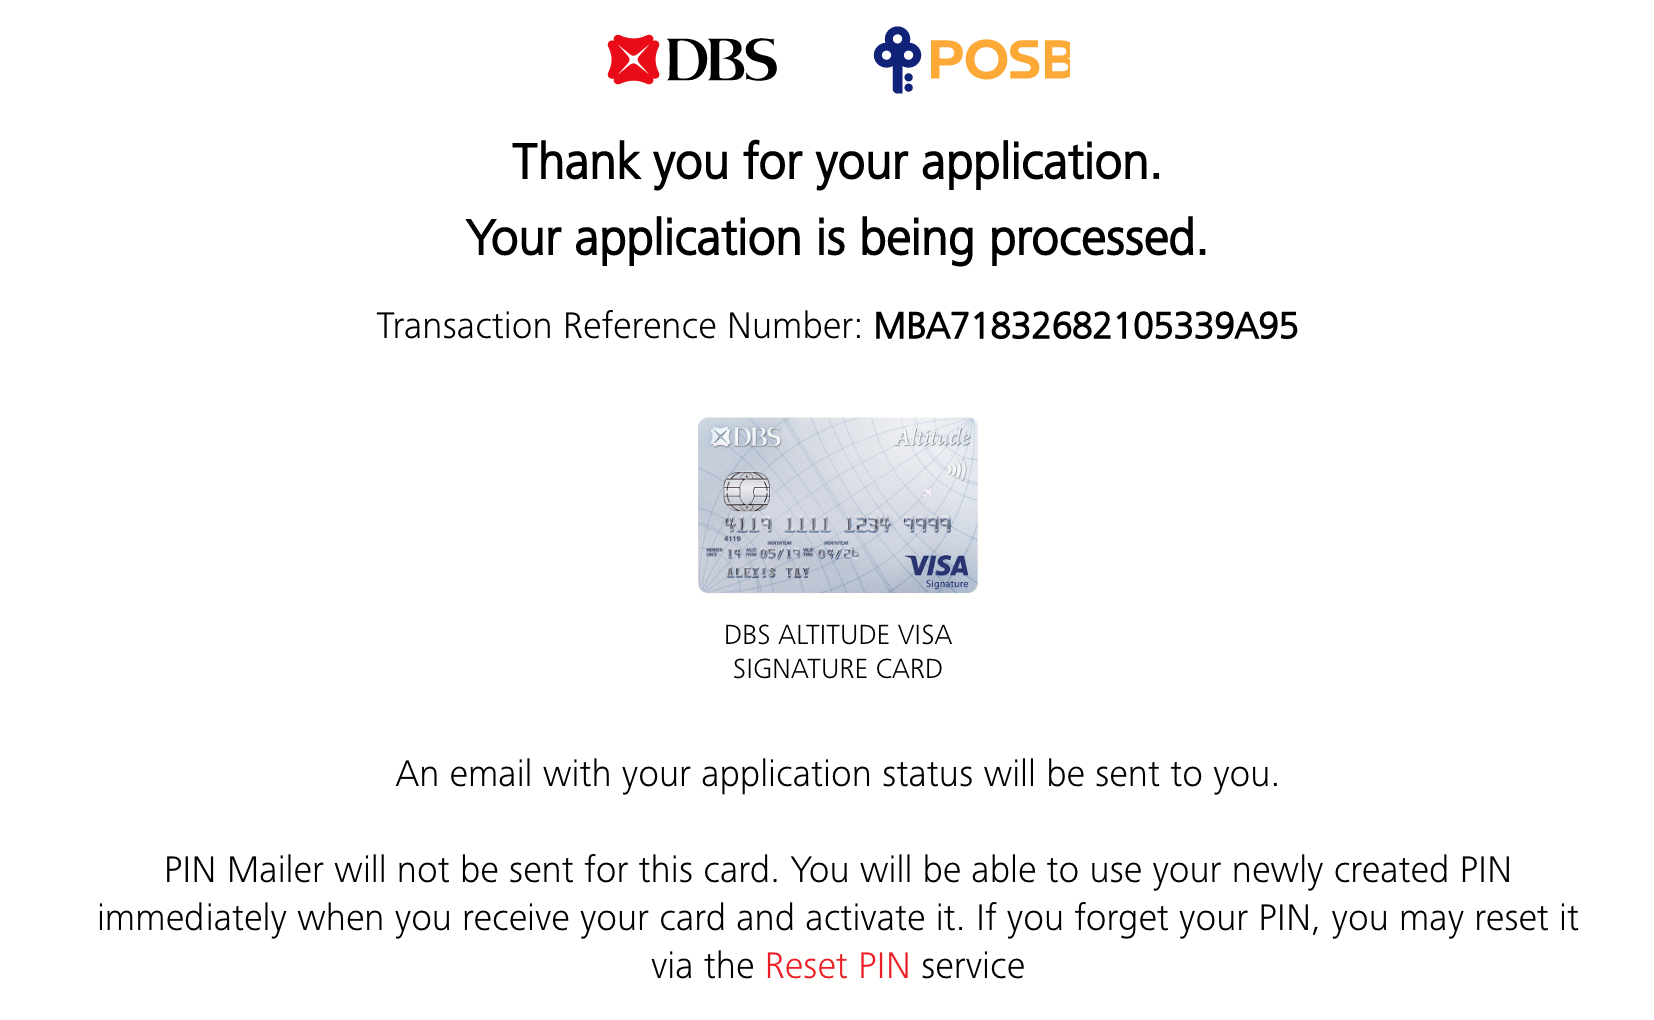 dbs_credit_card.png